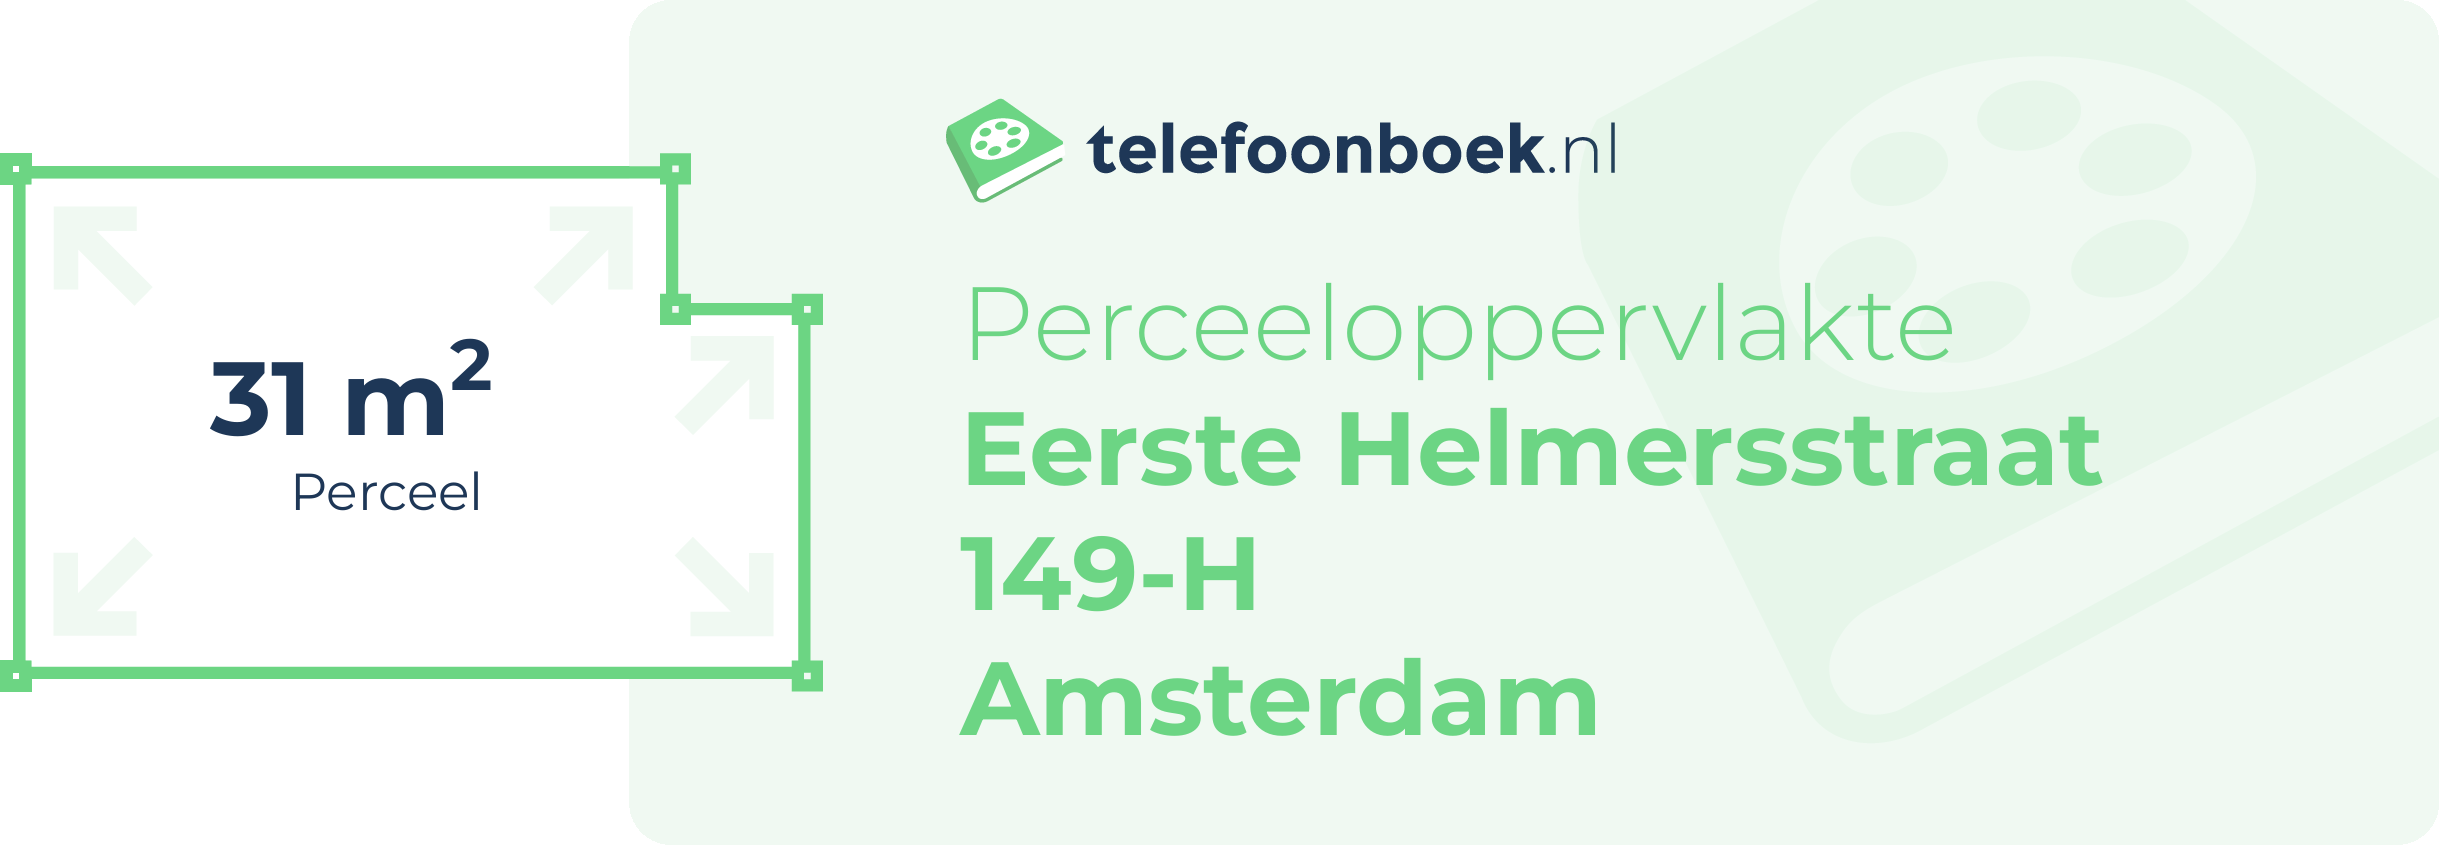 Perceeloppervlakte Eerste Helmersstraat 149-H Amsterdam